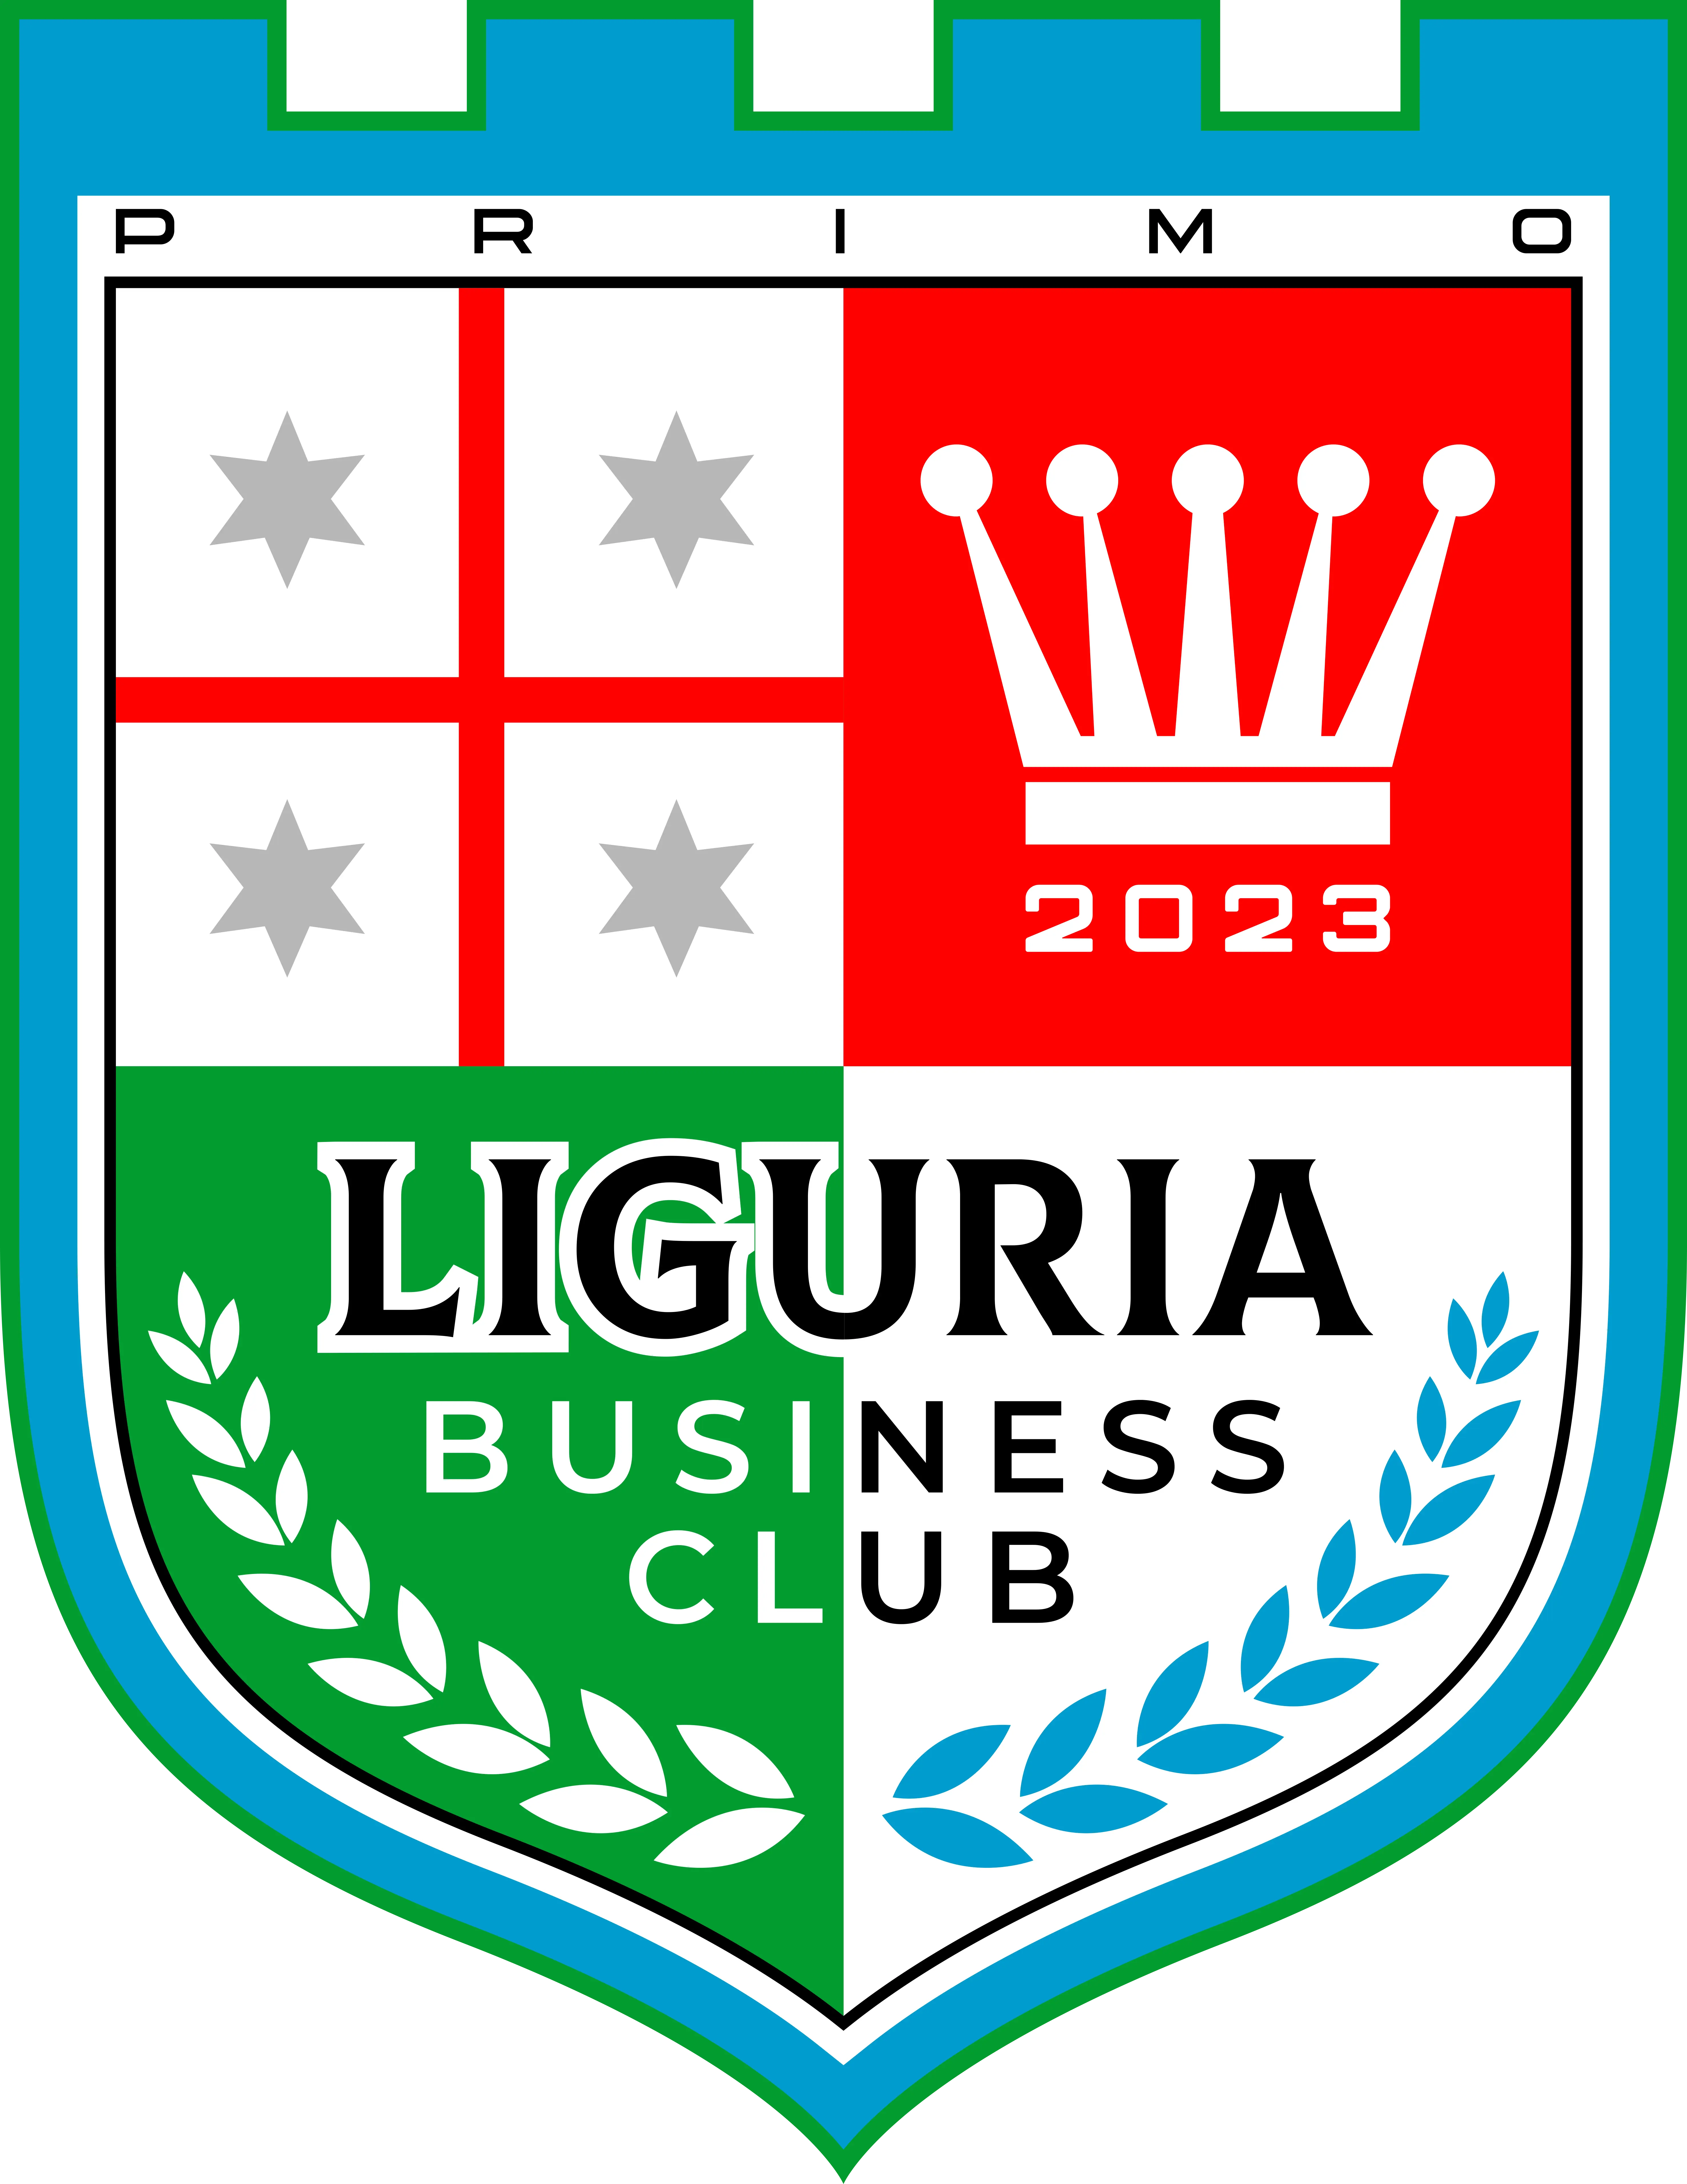 Liguria Business Club